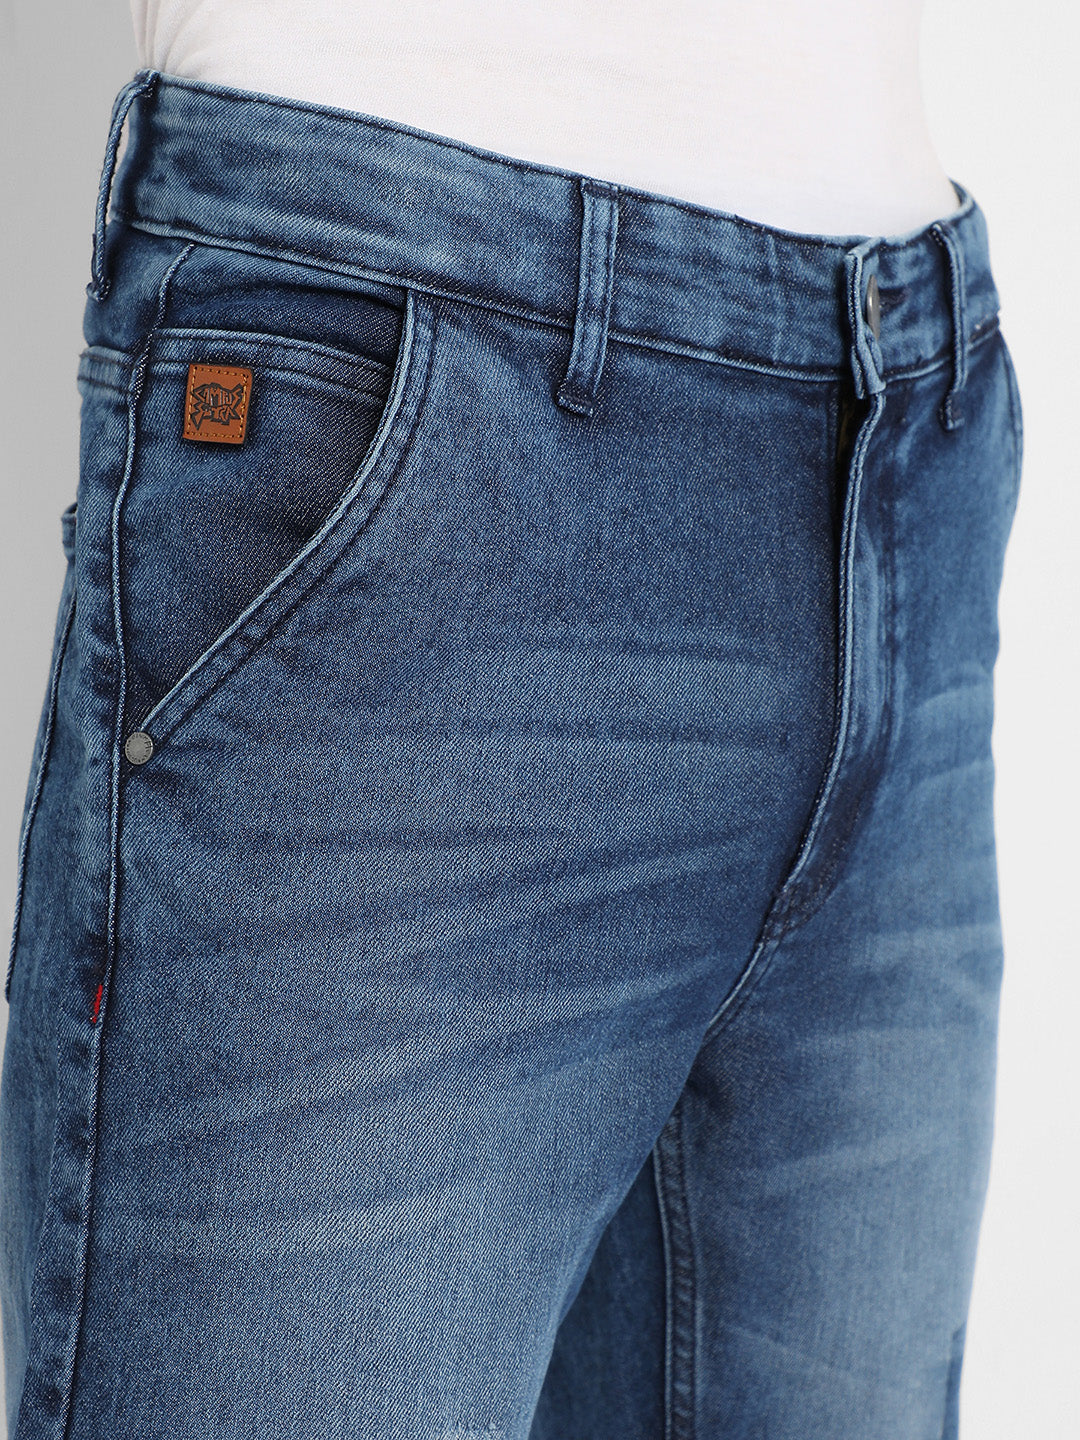 Men's Blue Distressed Patterned Denim Jeans